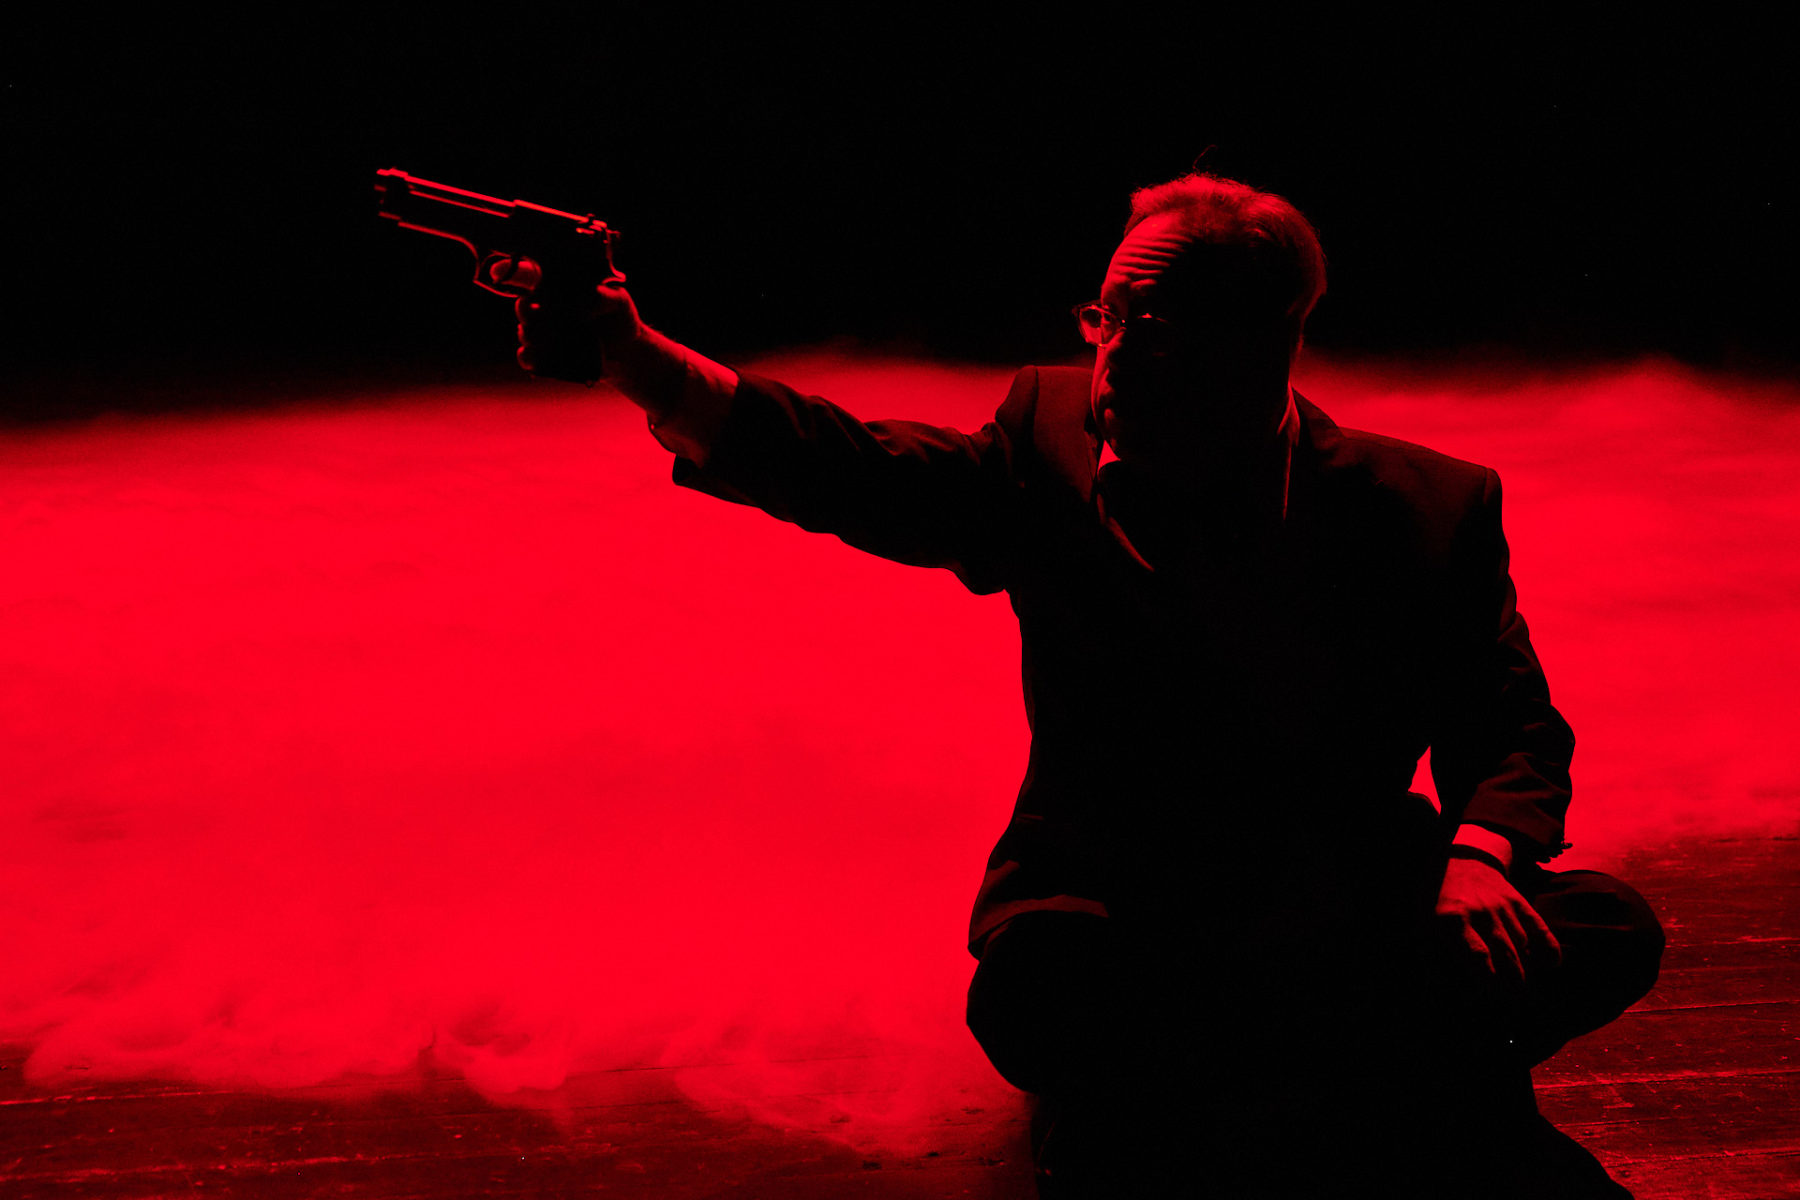 Christoph im James Bond Outfit. Nebel auf dem Boden. Alles rot beleuchtet.